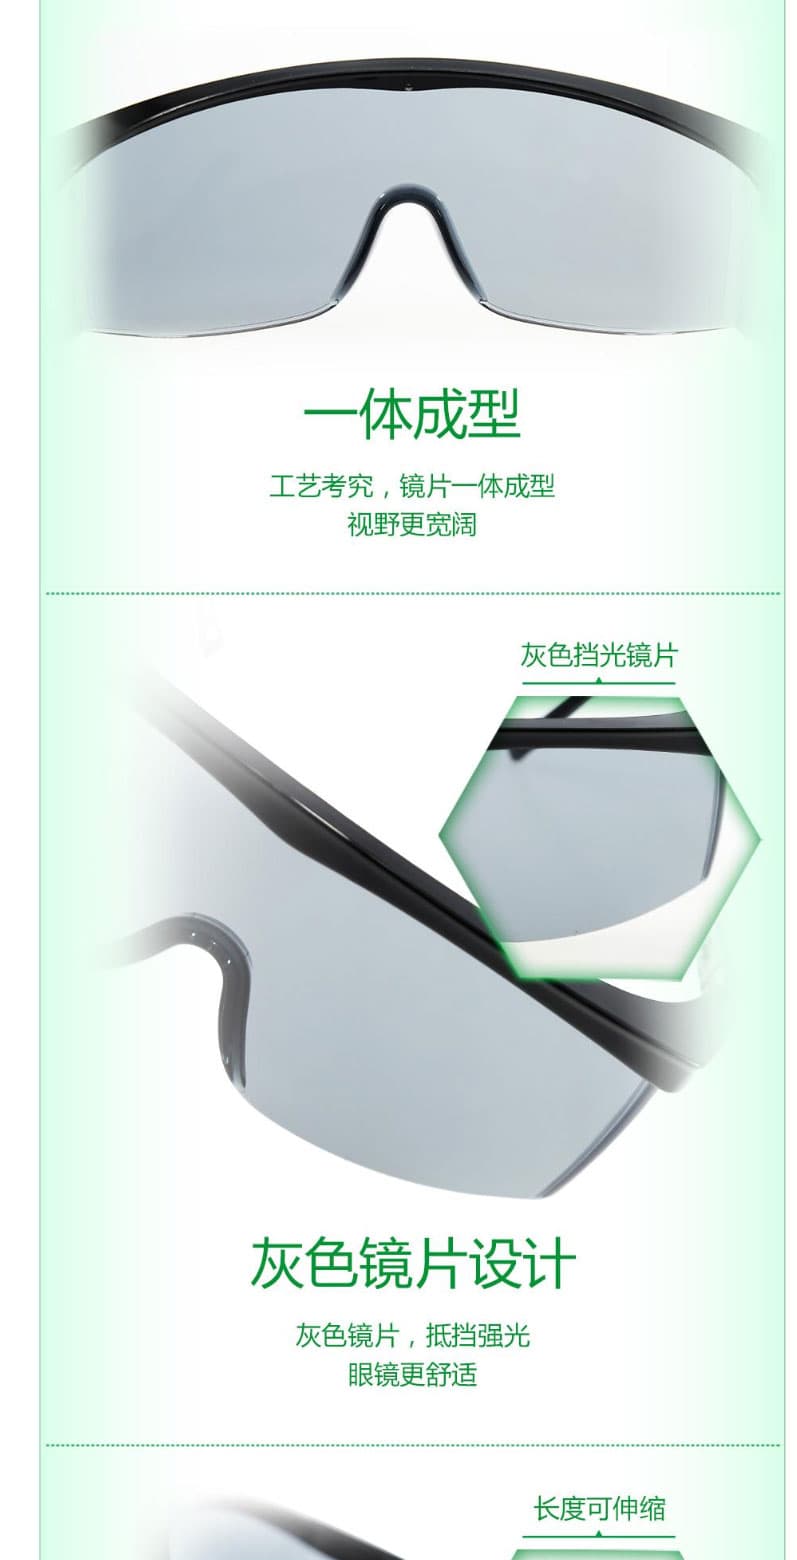 梅思安(MSA)  10108429 杰纳斯-AC防护眼镜